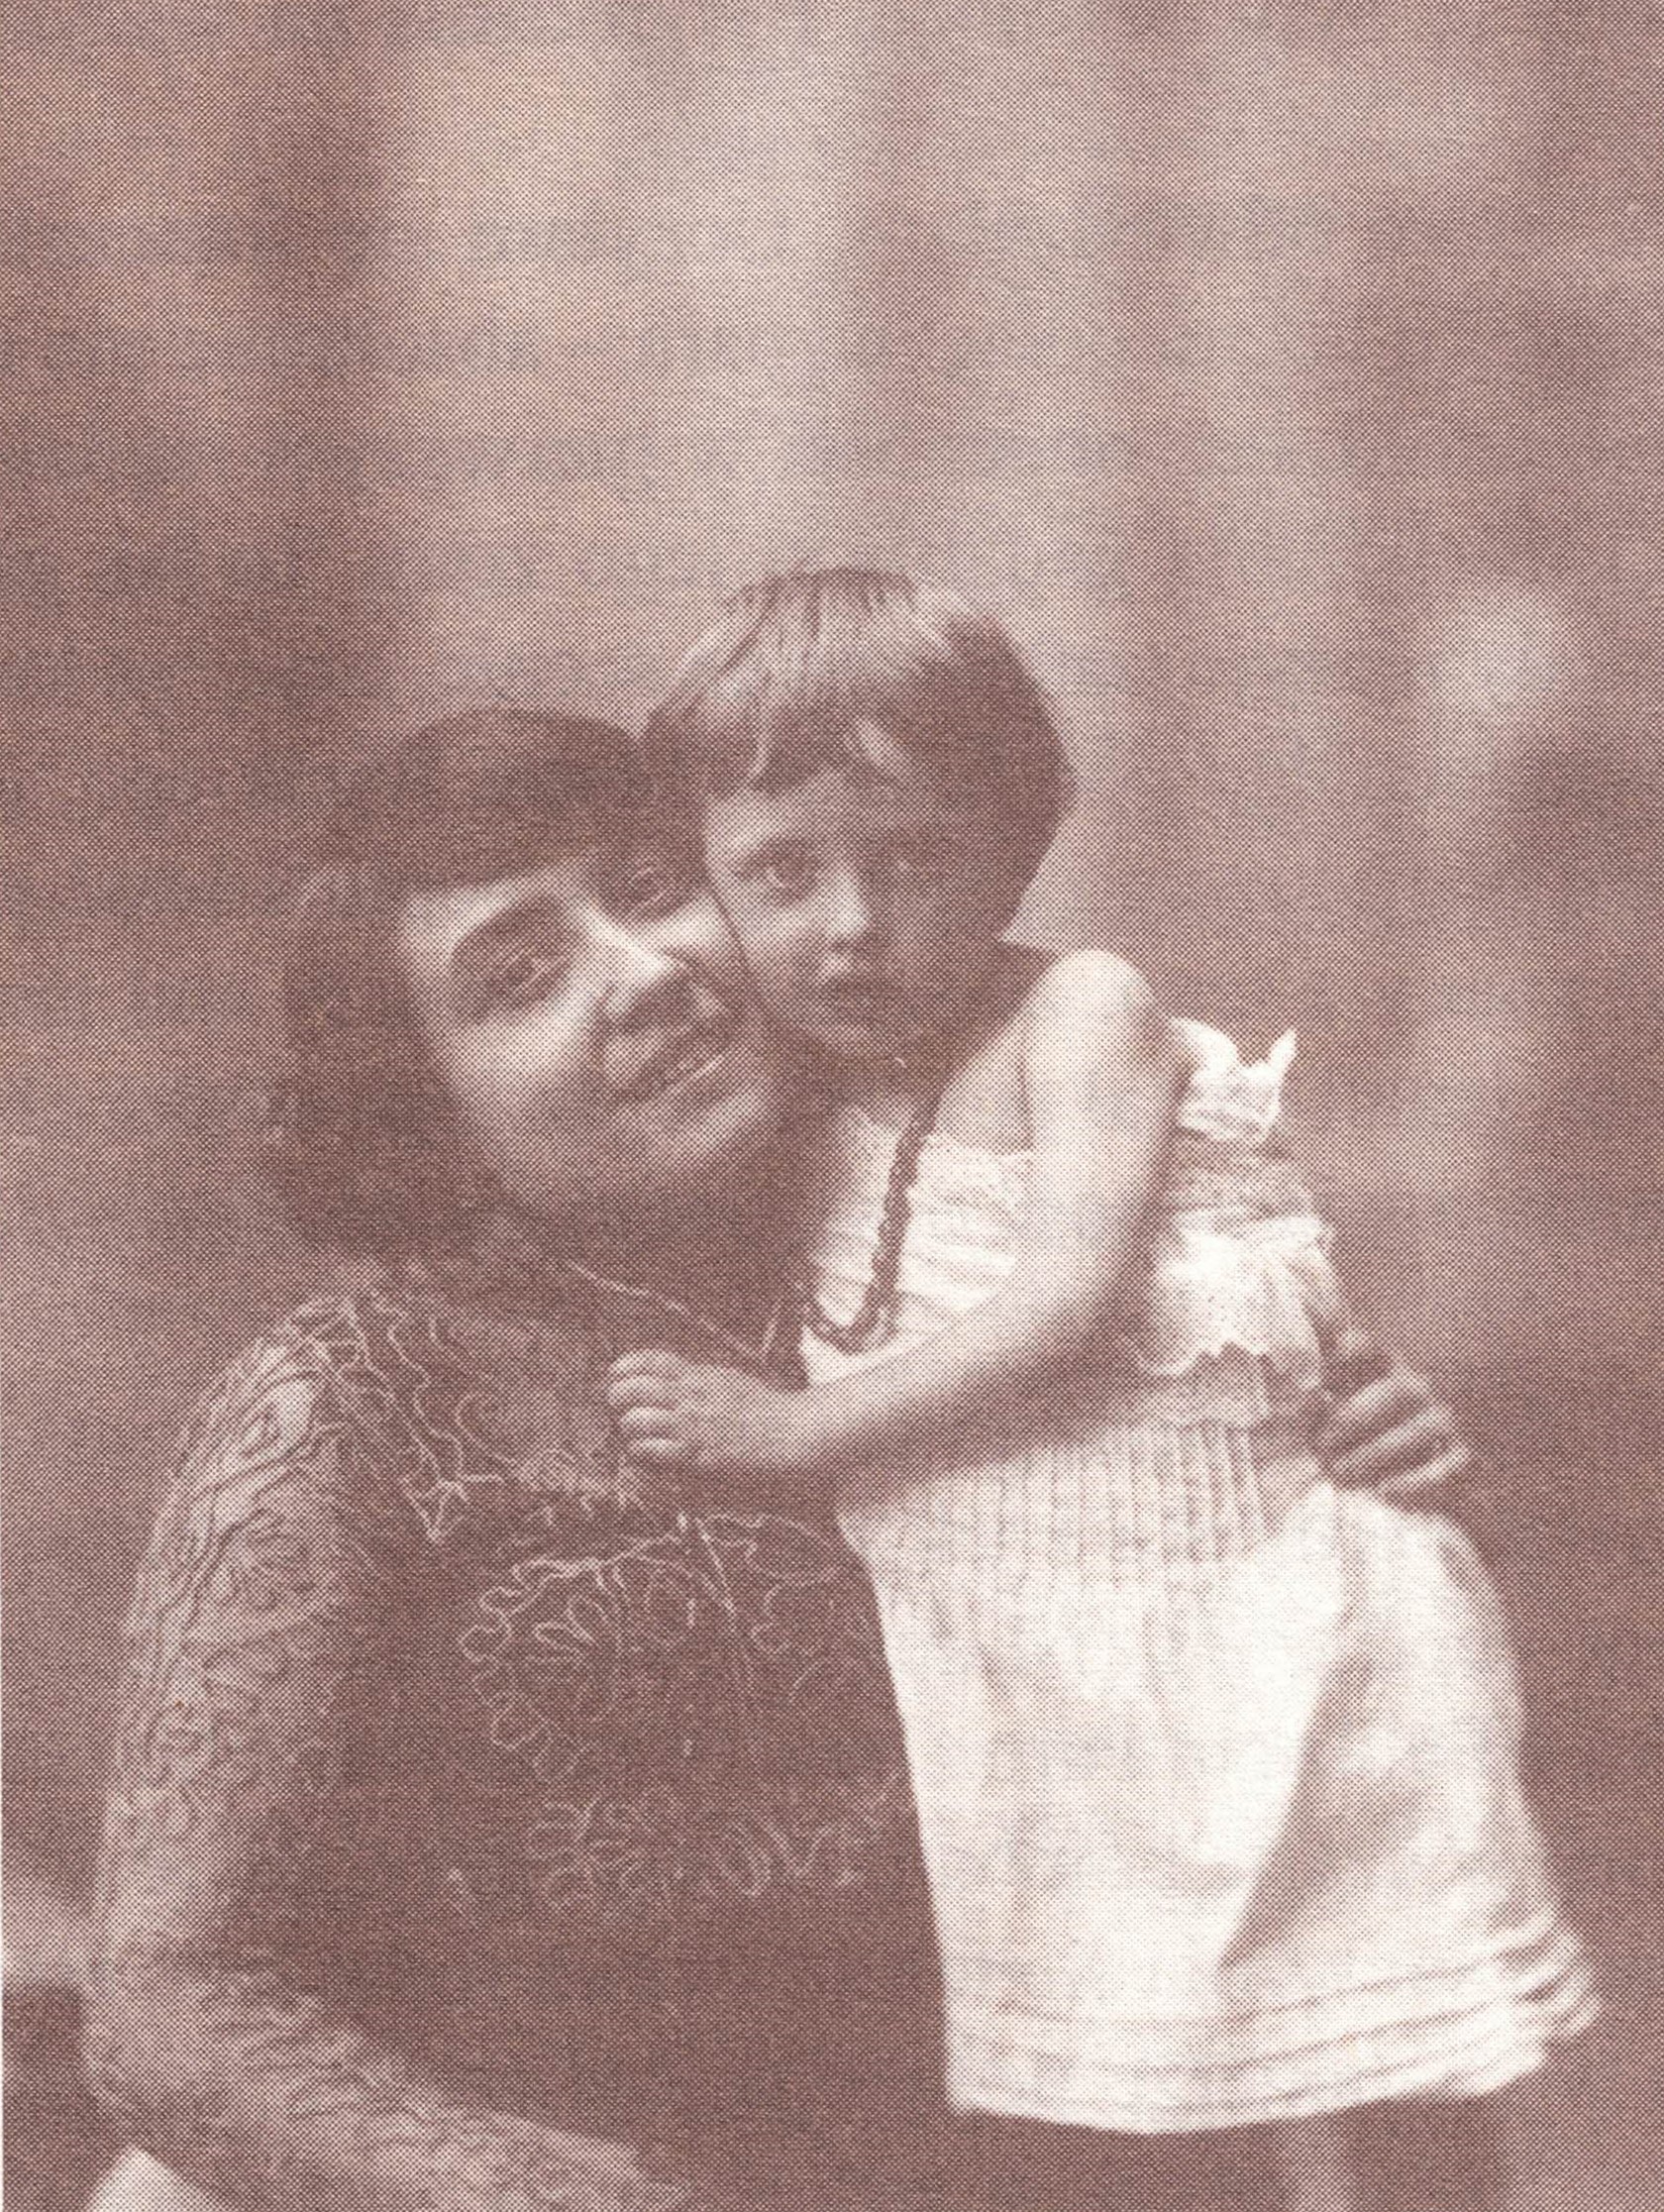 Carlotta z matką Lotarią Bologna, żródło: C. Bologna "Błyski z życia"